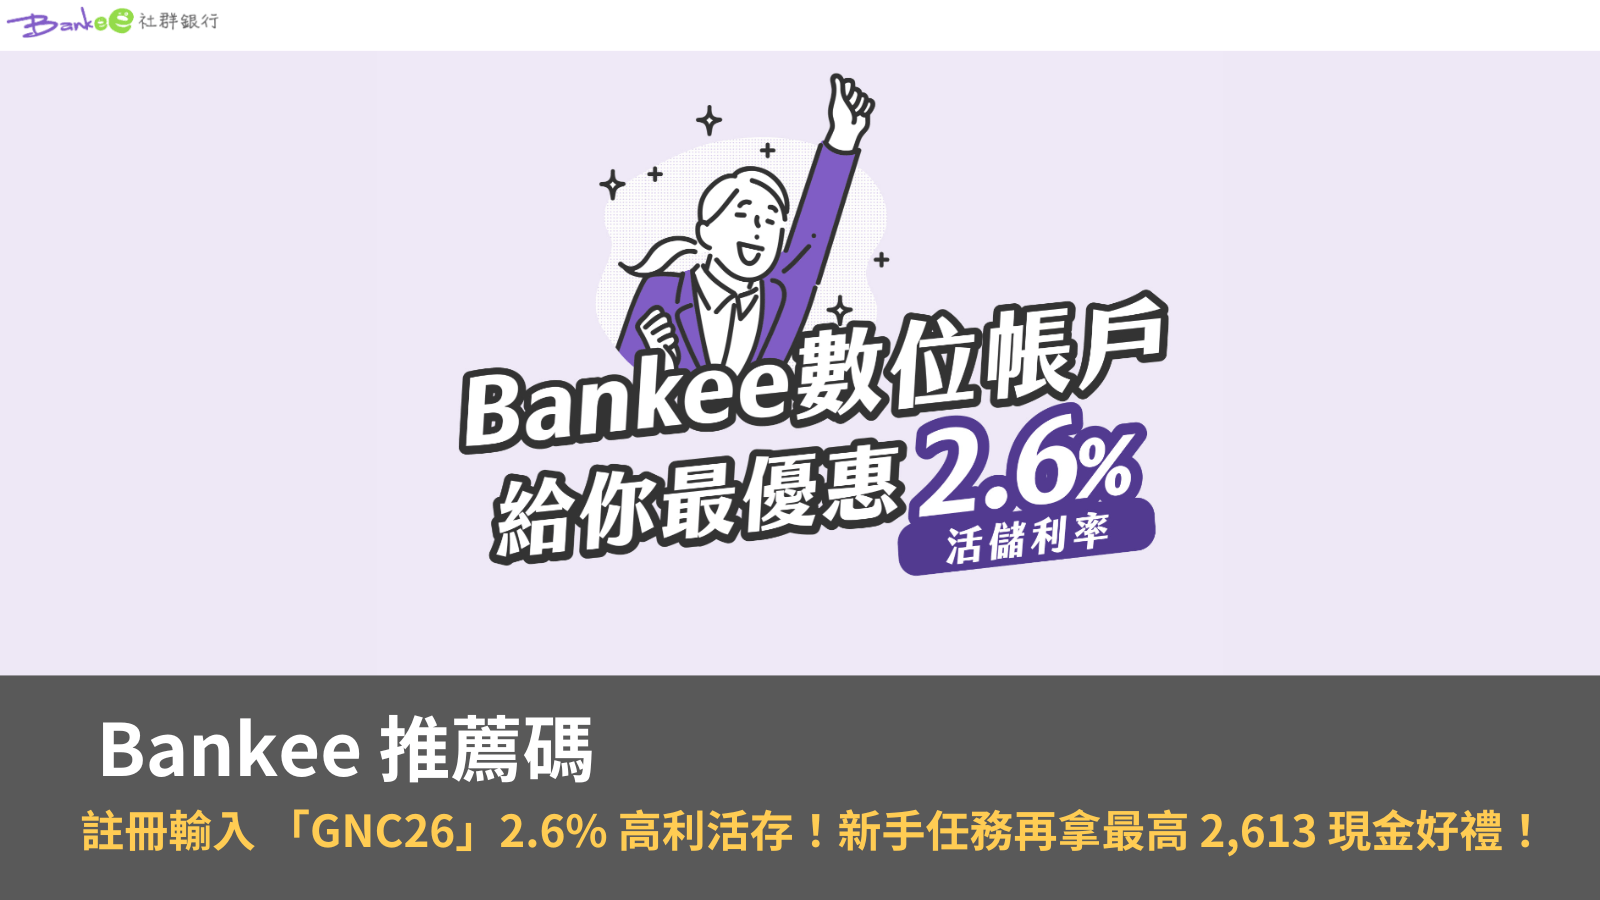 這篇遠銀 Bankee 數位帳戶的推薦碼使用與介紹文，想開通數位帳戶的你一定想知道 Bankee 如何透過推薦碼享有 2.6％ 的高利率活存，遠銀 Bankee 數位銀行不論小資族或存款大戶都很適合。